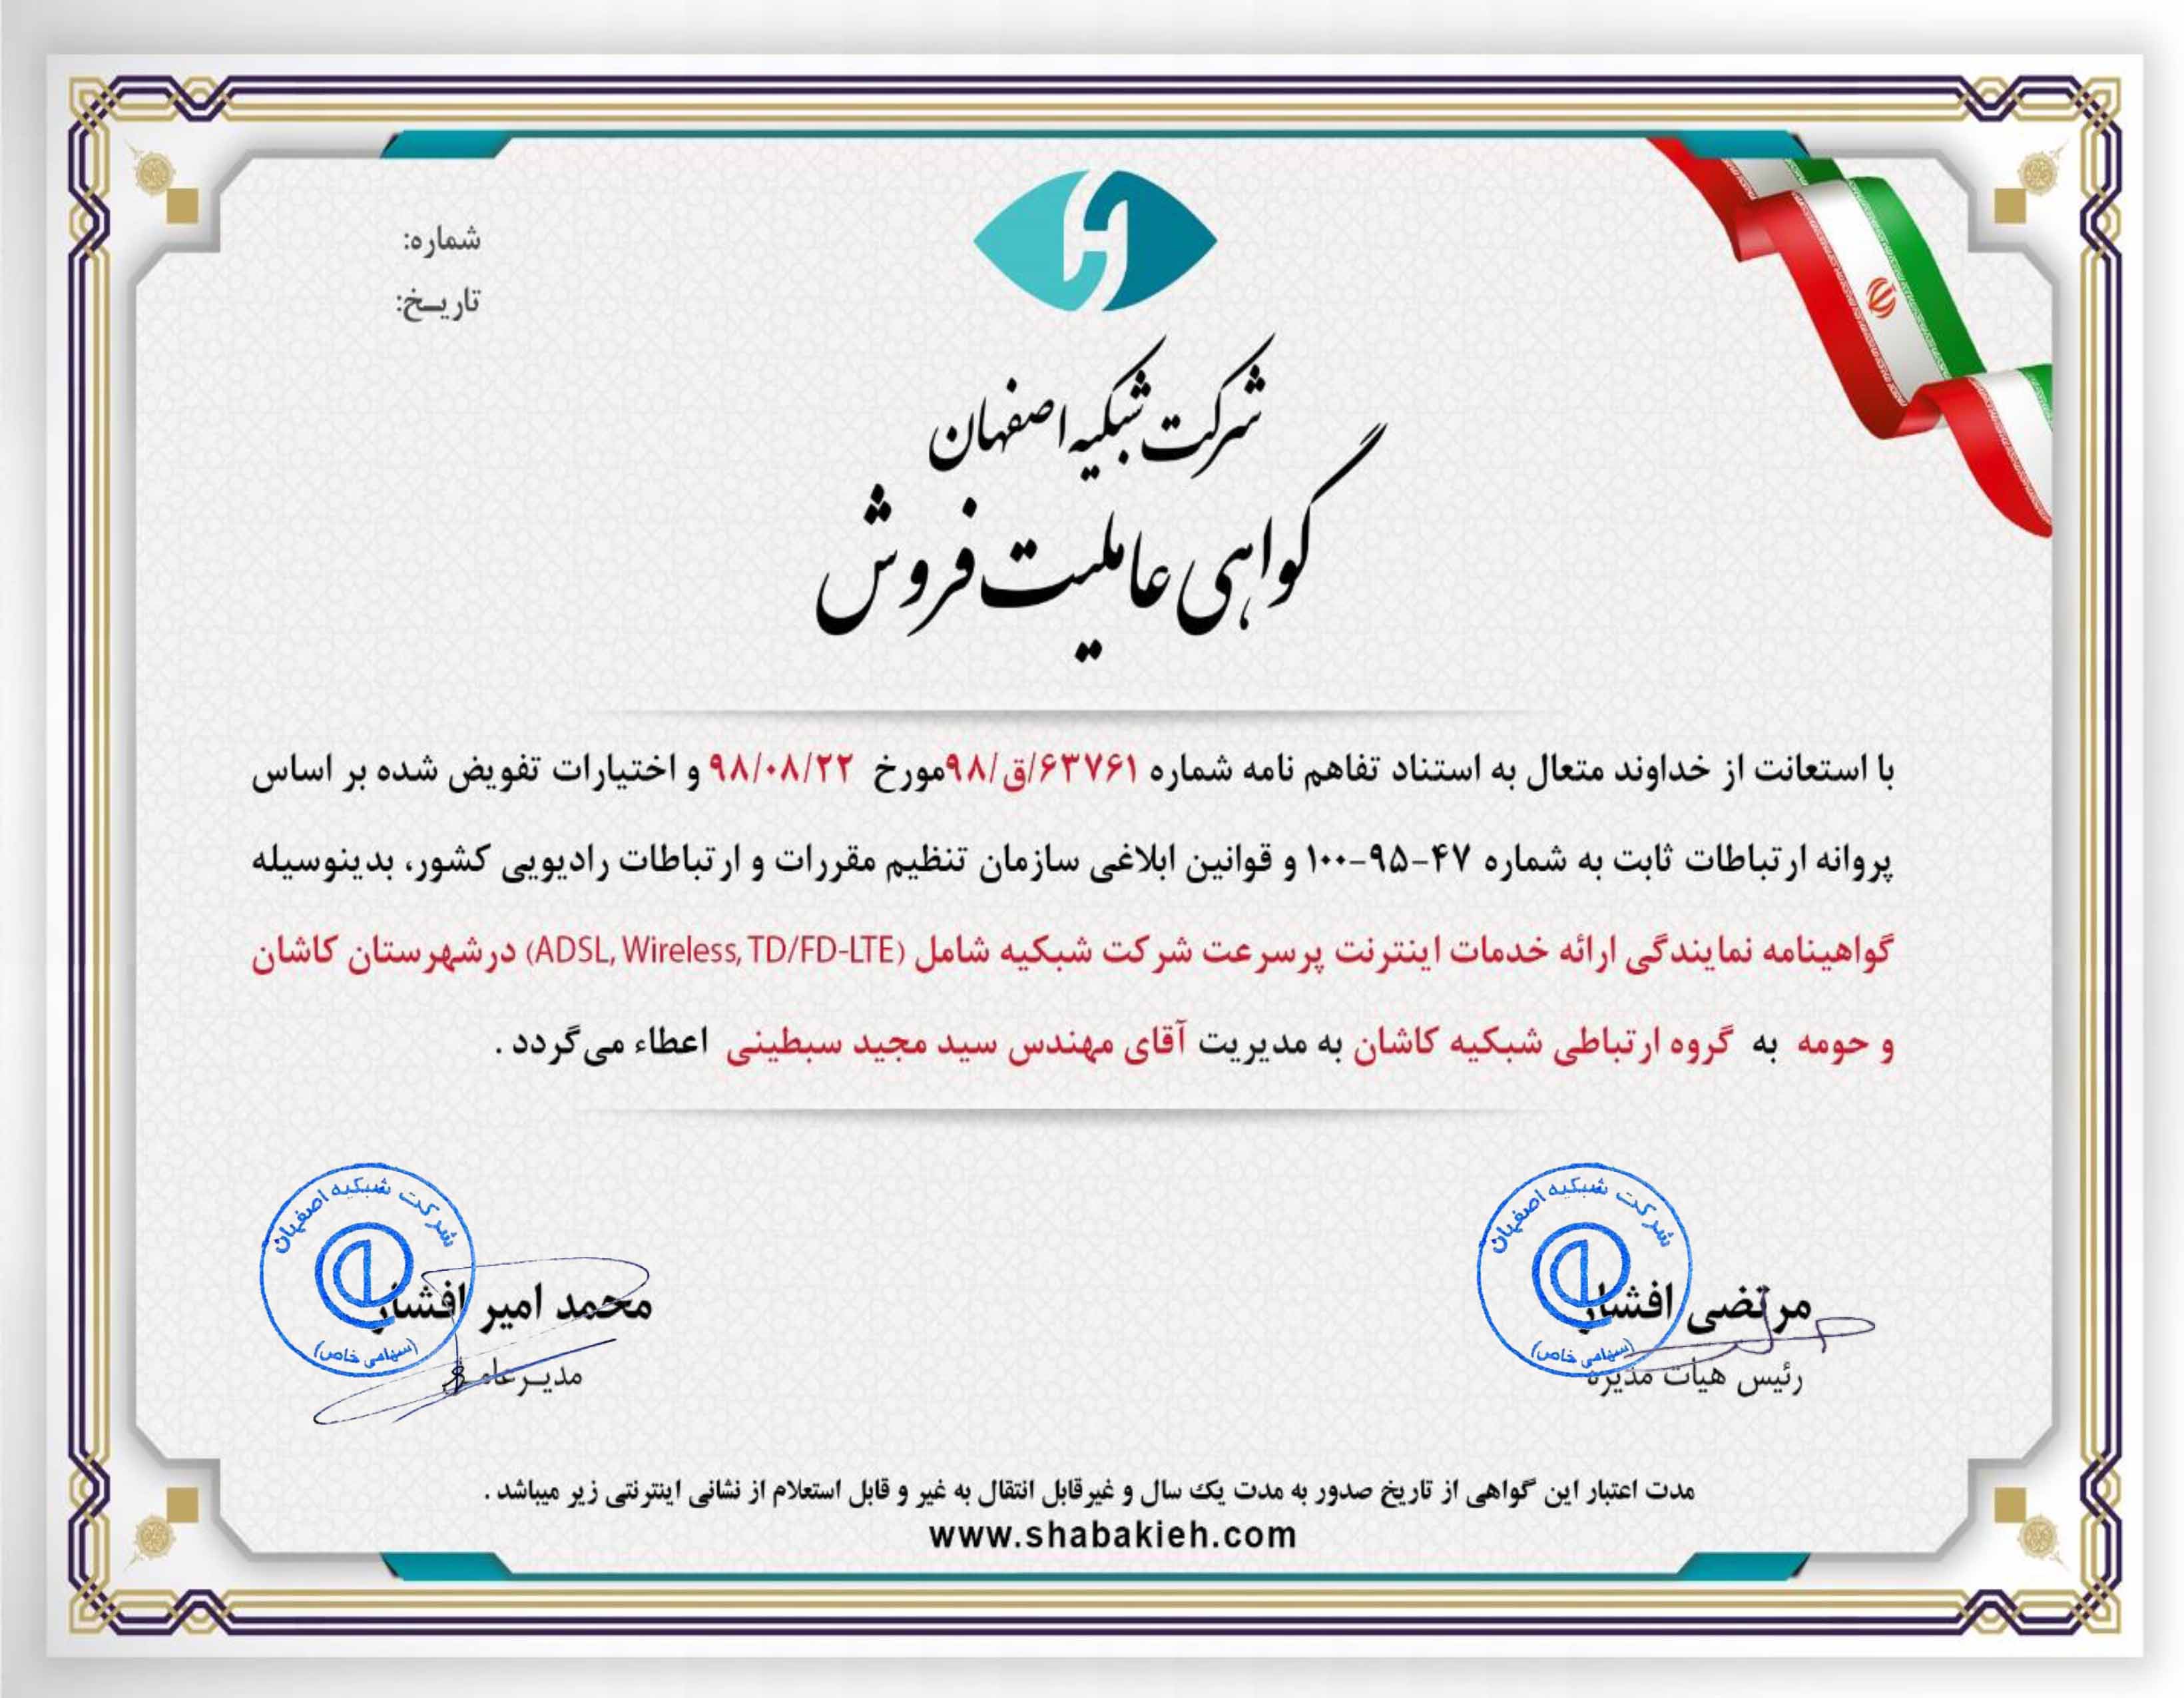 ارائه کلیه خدمات اینترنت شرکت شبکیه اصفهان ADSL, WIRELESS, VPS